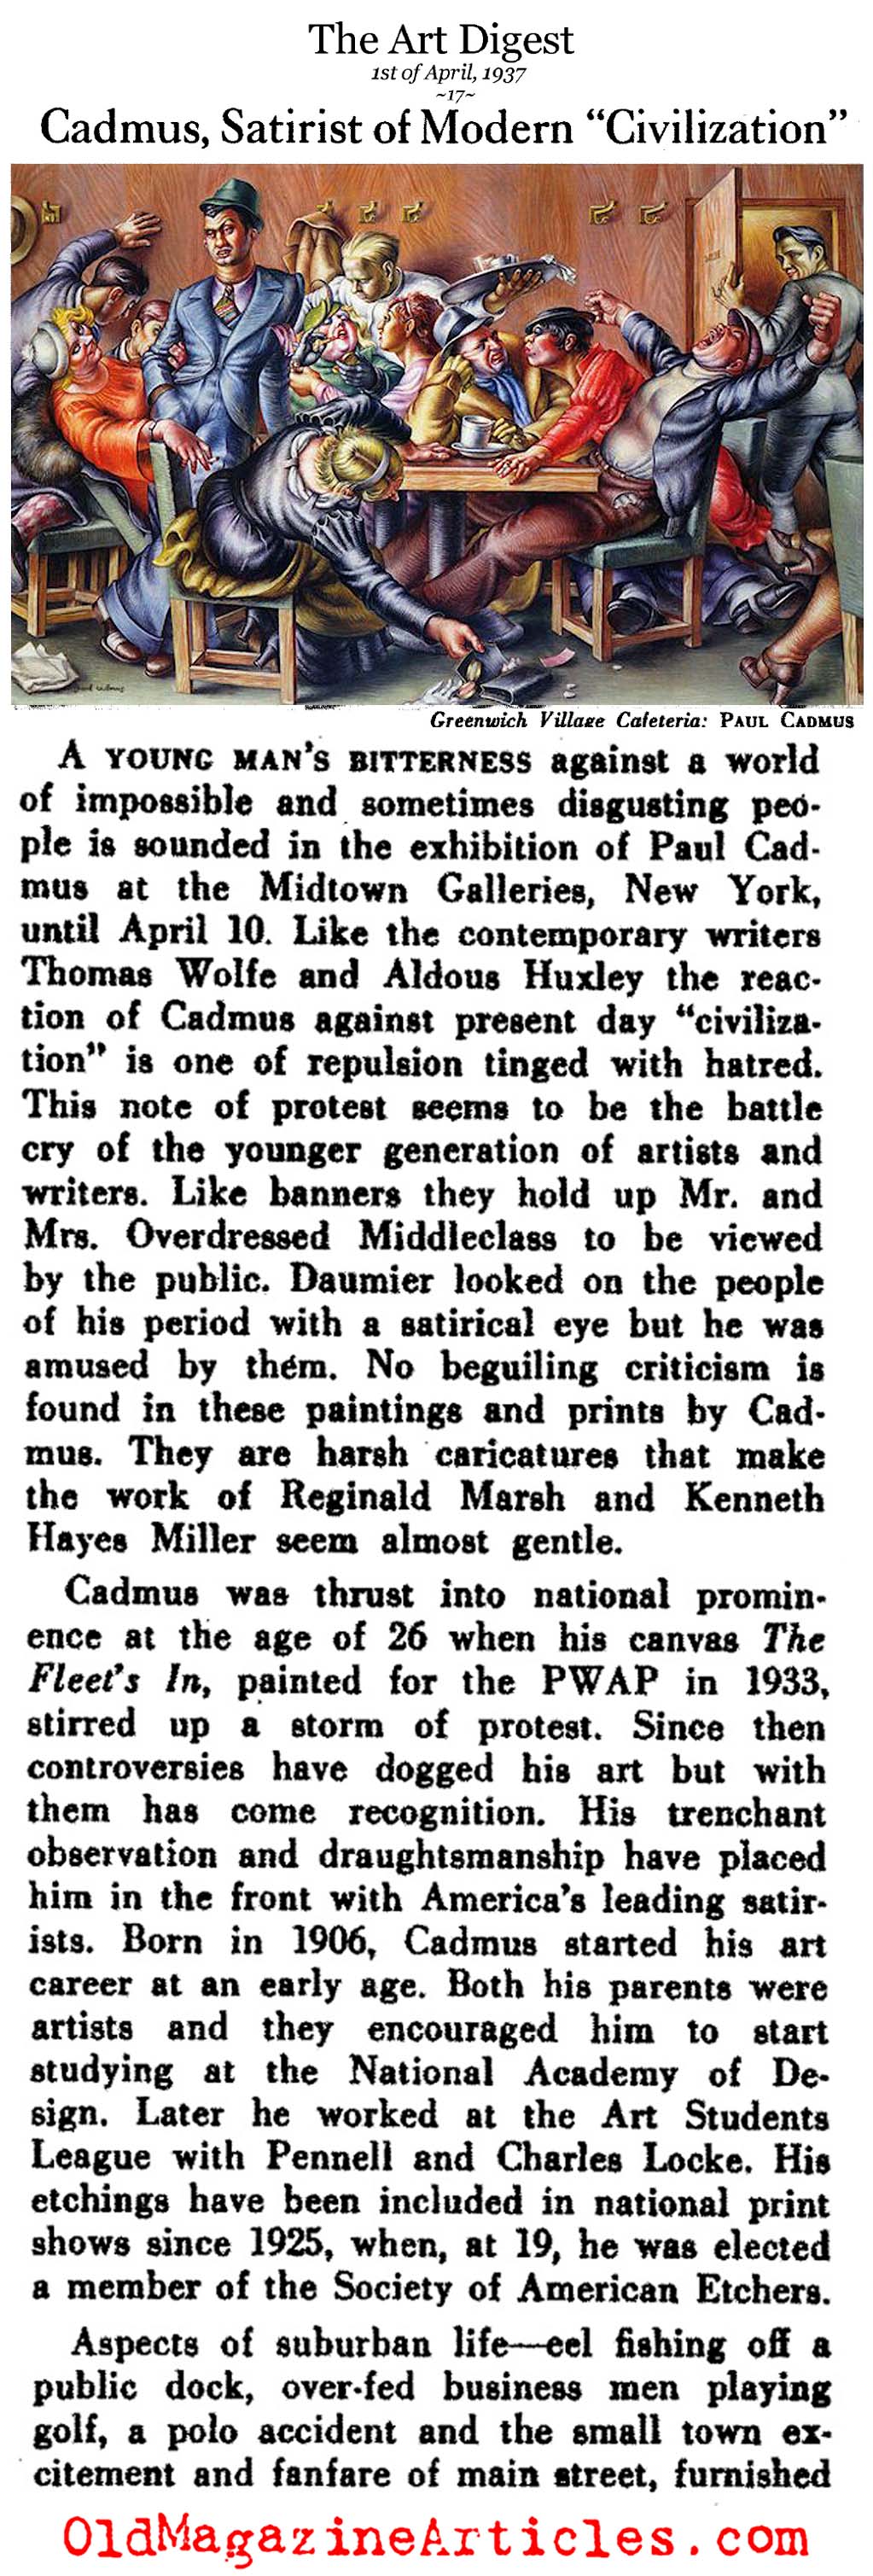 Artist Paul Cadmus (Art Digest, 1937)